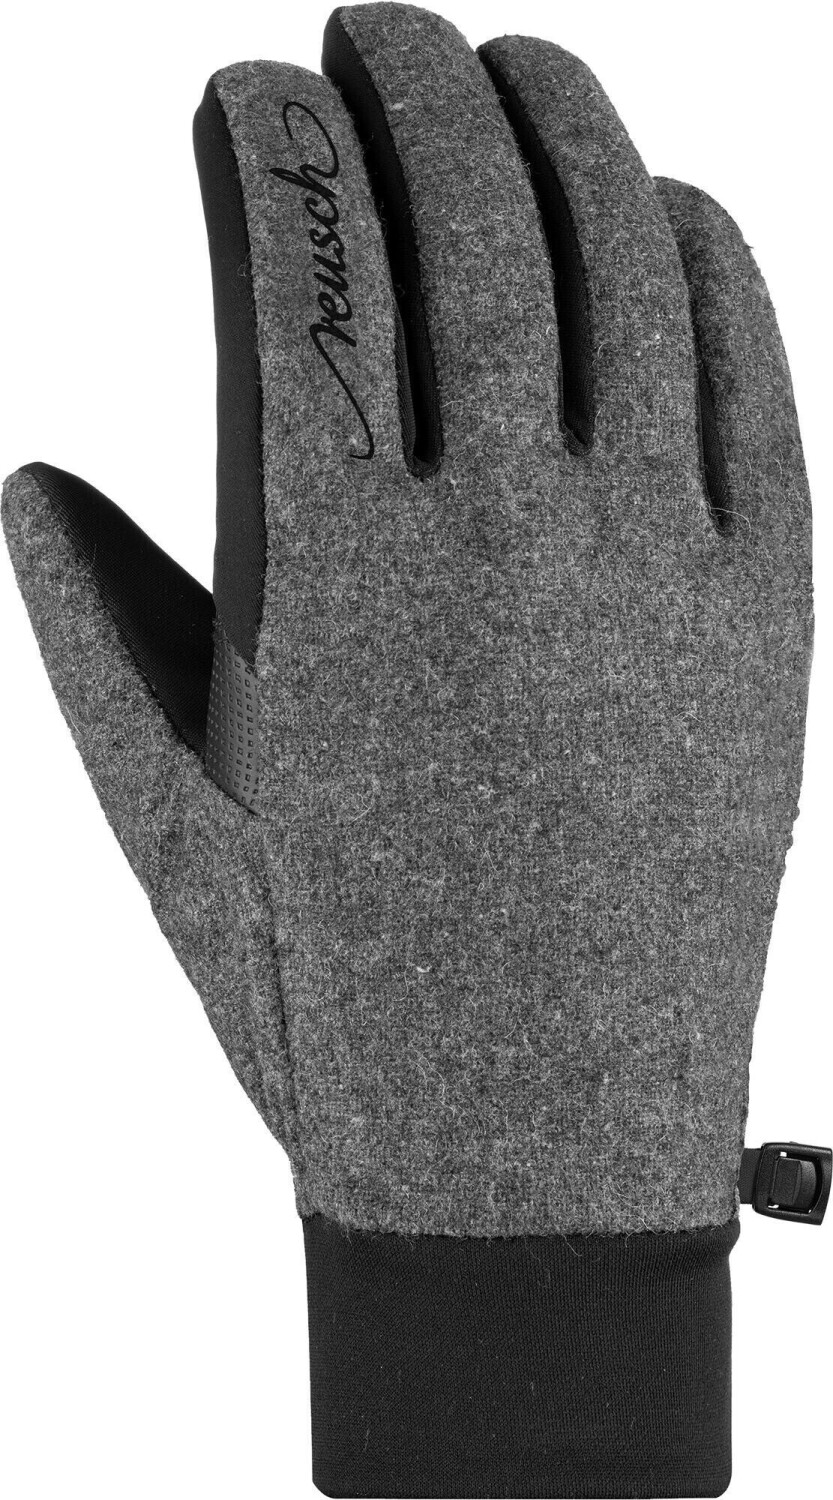 Reusch Saskia Touch-Tech Glove black/greyalpine € 28,05 | melange bei Preisvergleich ab